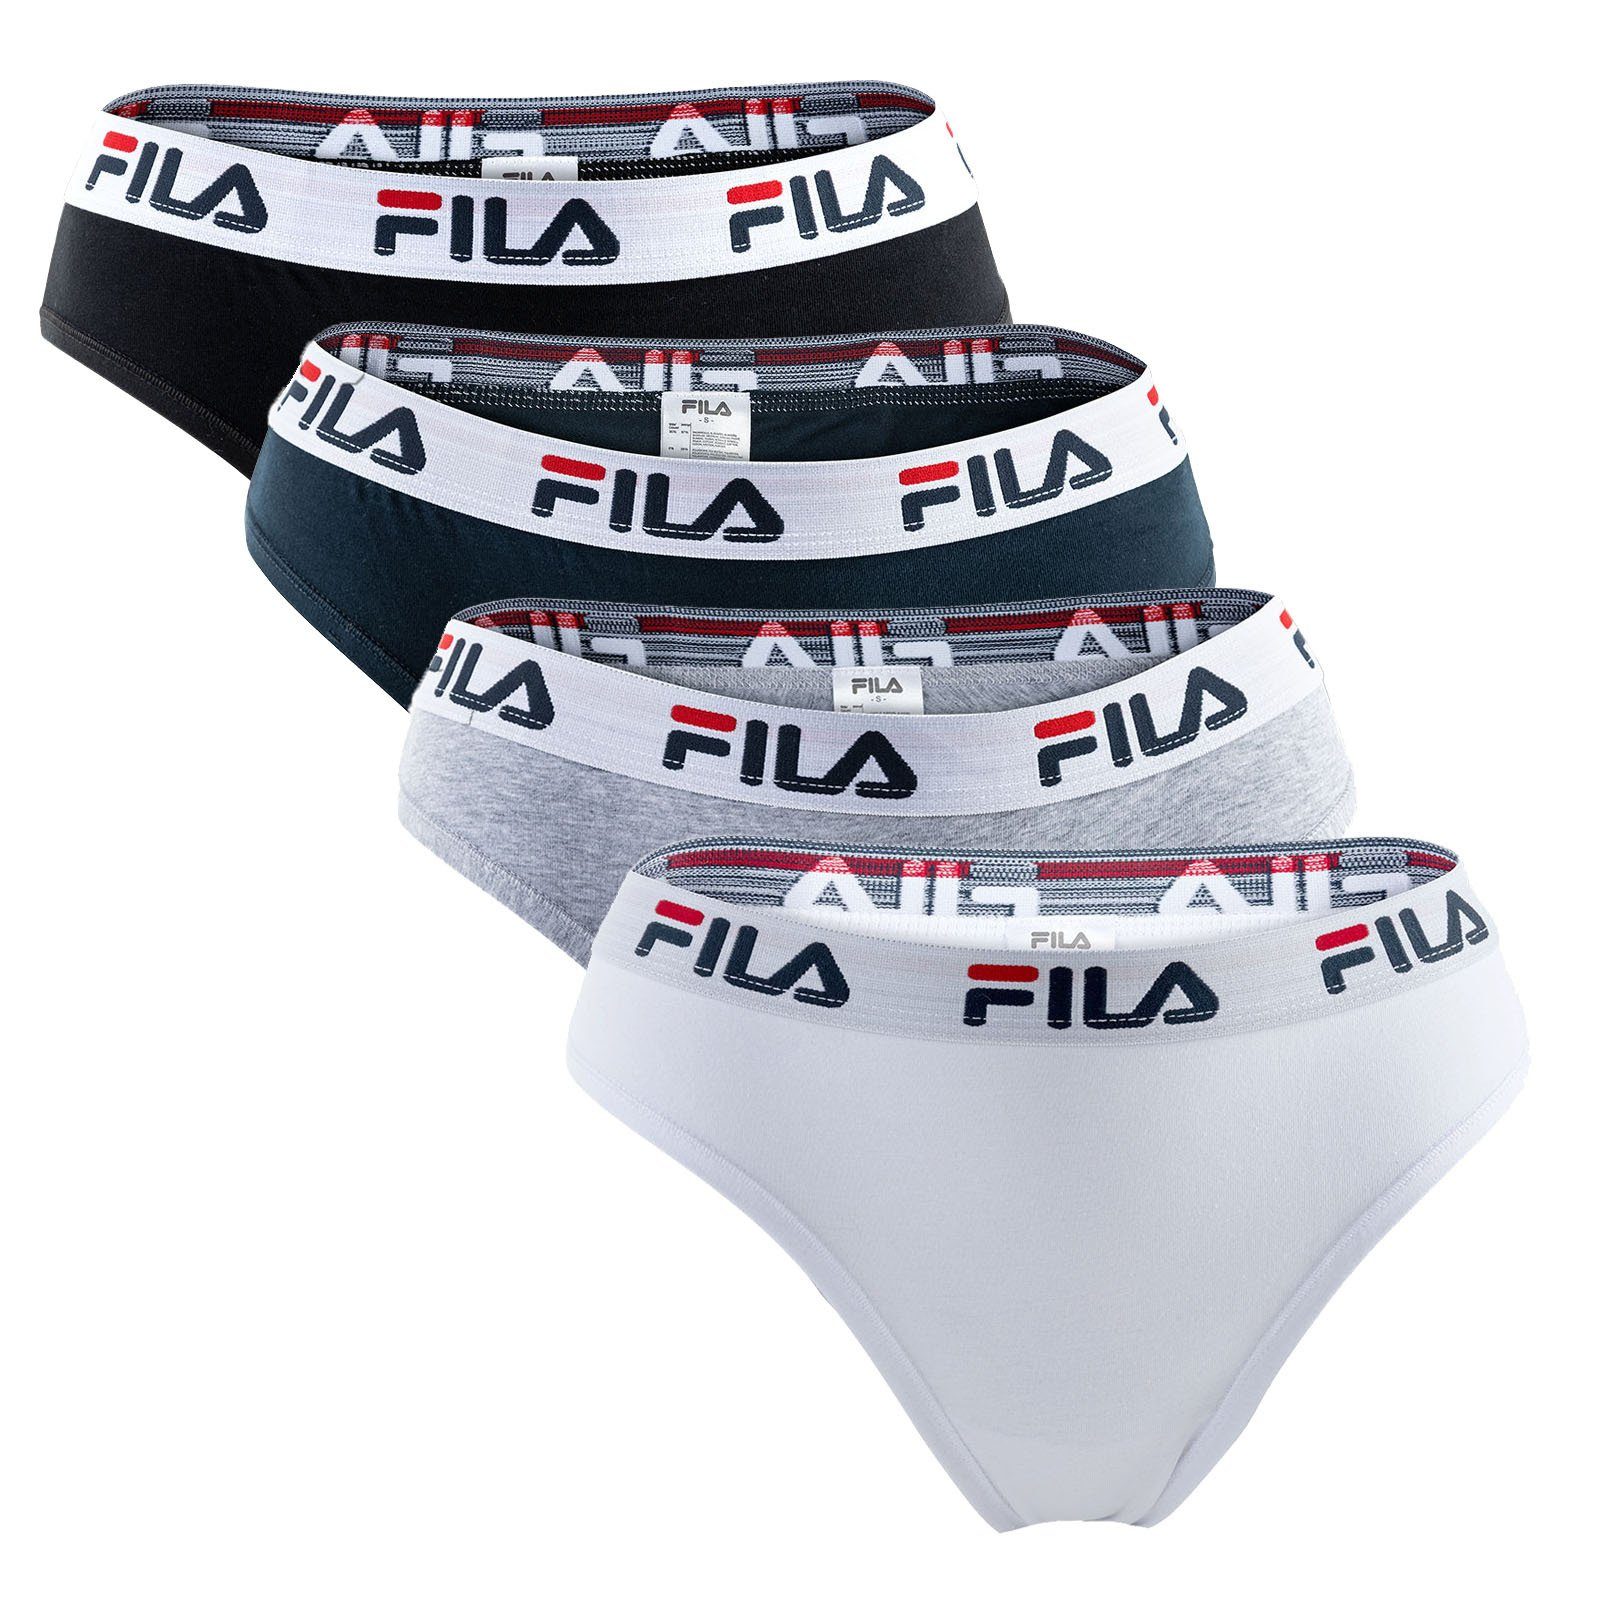 Fila Slip Damen Brazilian Slip - 4er Pack, Logo-Bund, Cotton Weiß/Schwarz/Grau/Marine